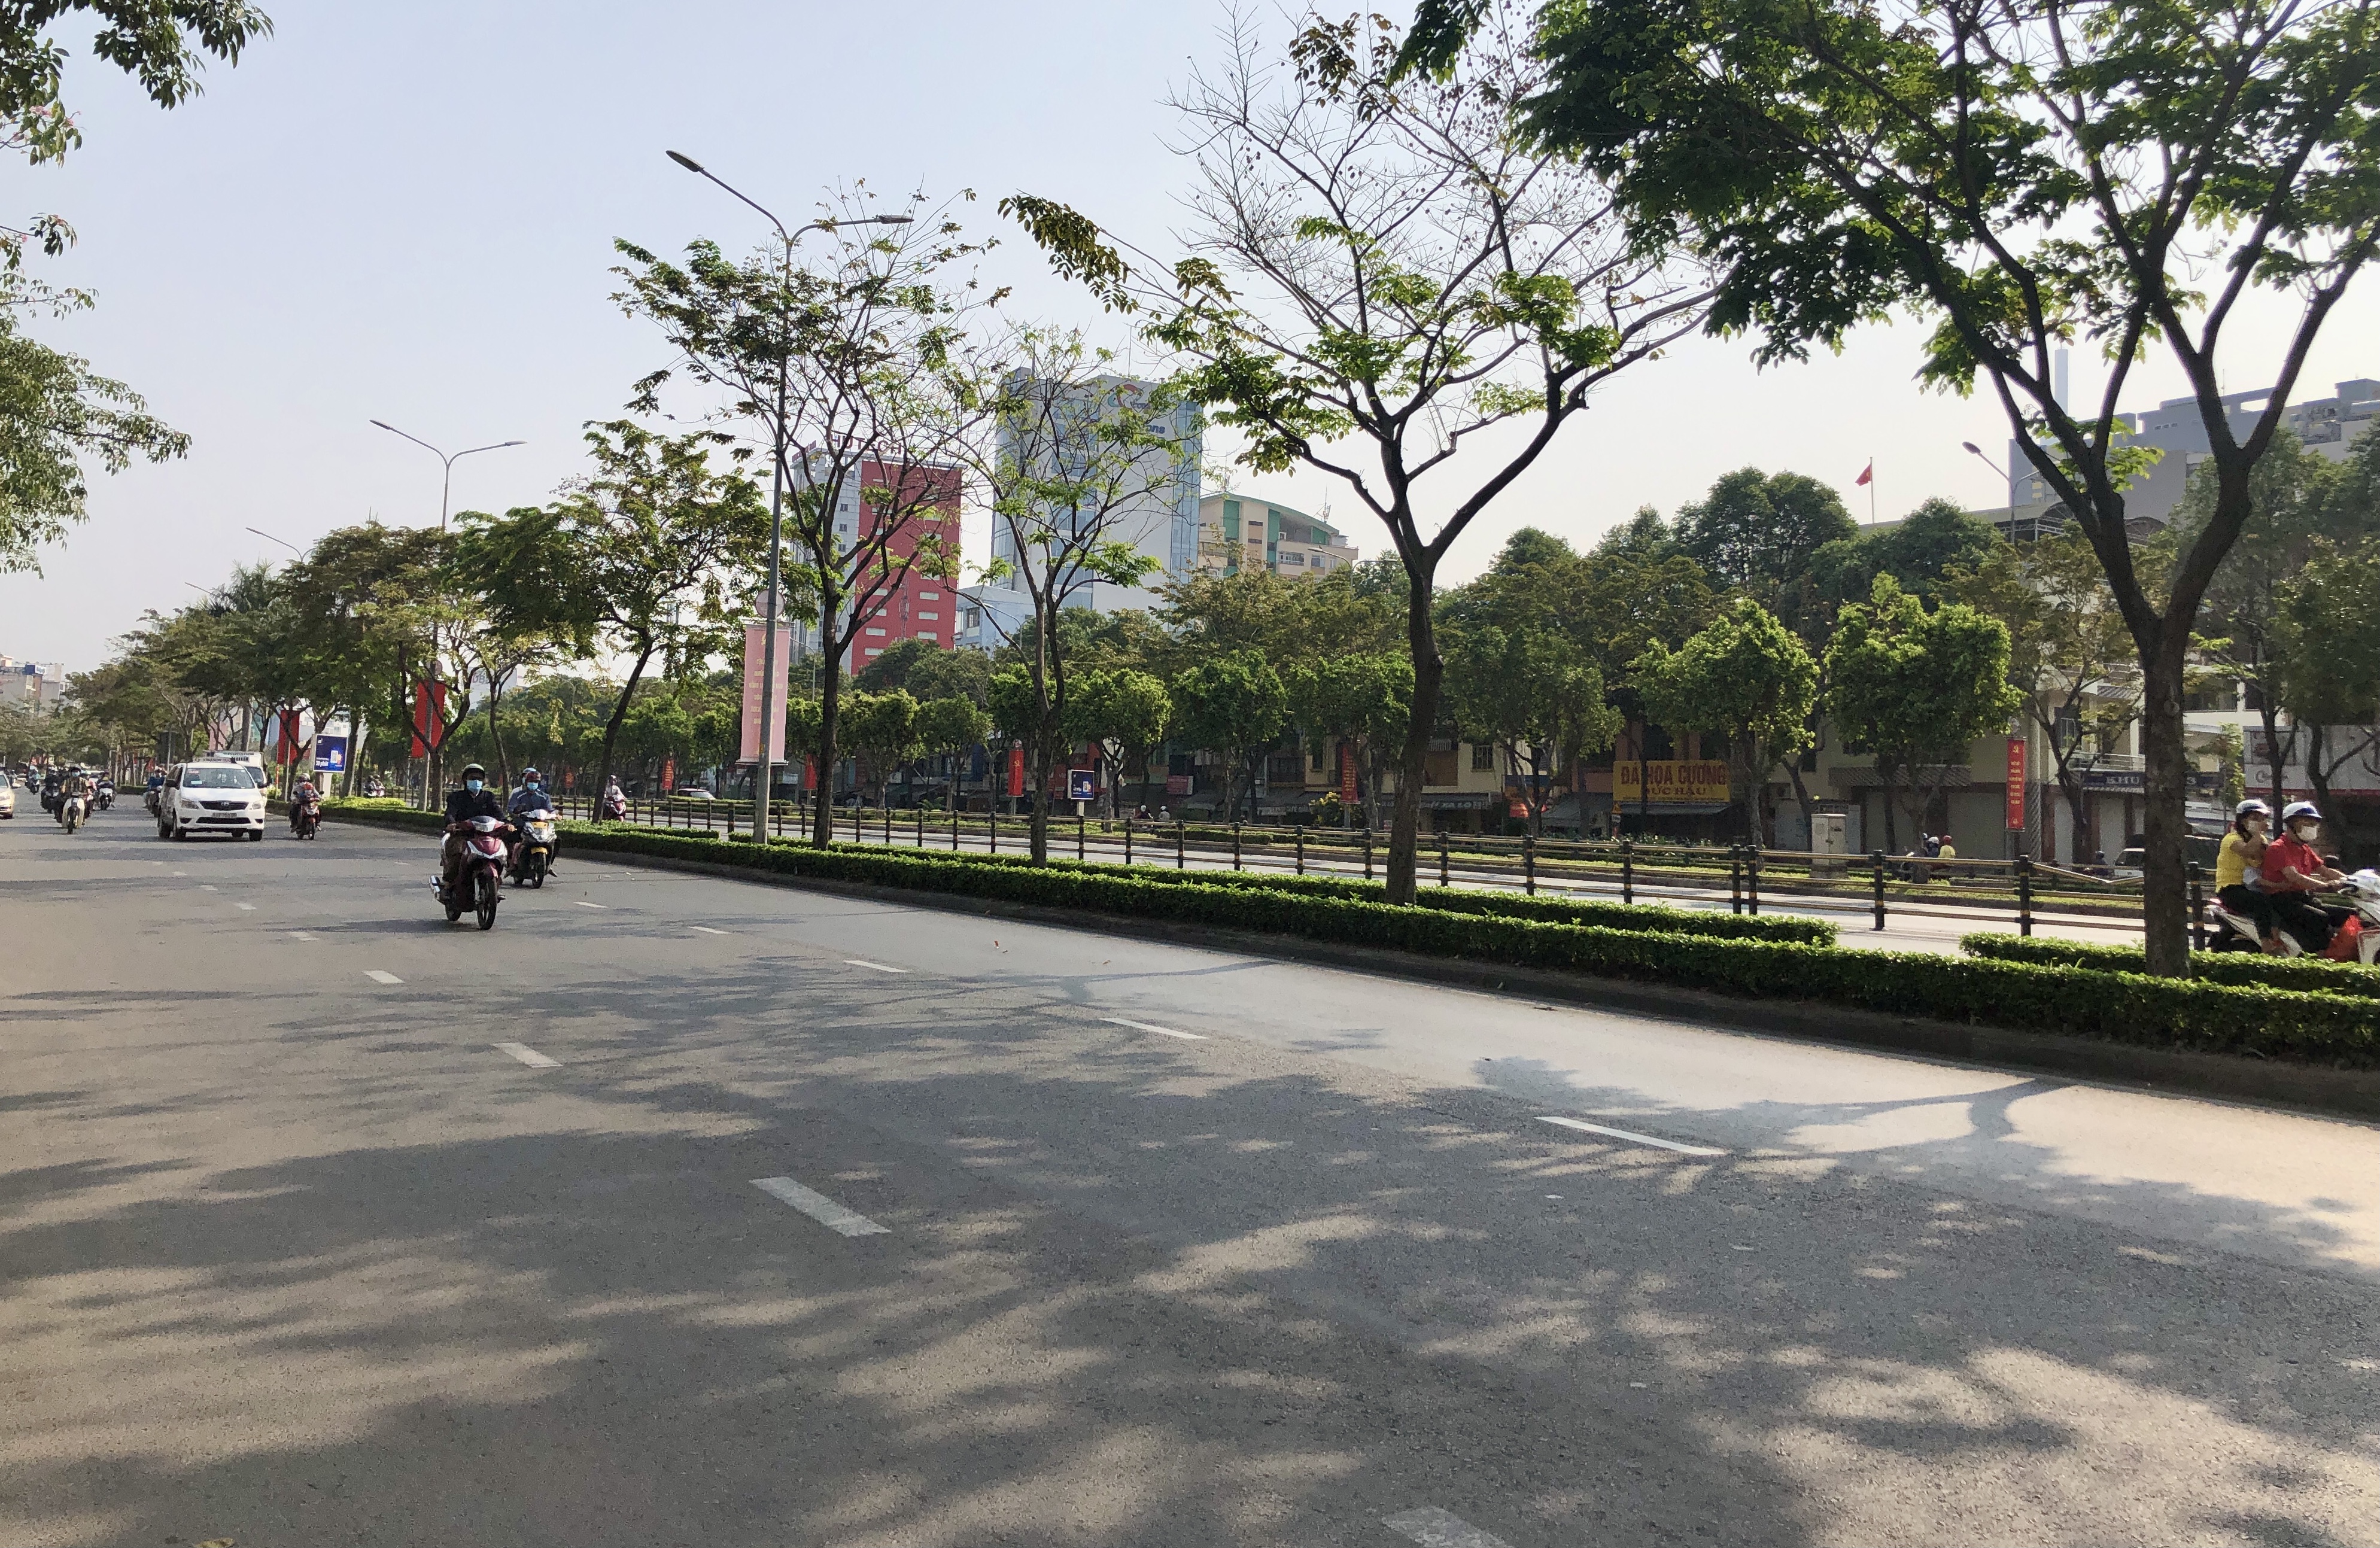 Hình ảnh đường phố vào ngày Tết sẽ khiến bạn phải chao đảo nhớ nhà, hãy cùng theo dõi những màn diễu hành ngày Tết tại Việt Nam và khám phá thế giới tươi sáng, đầy màu sắc trong từng khung hình!